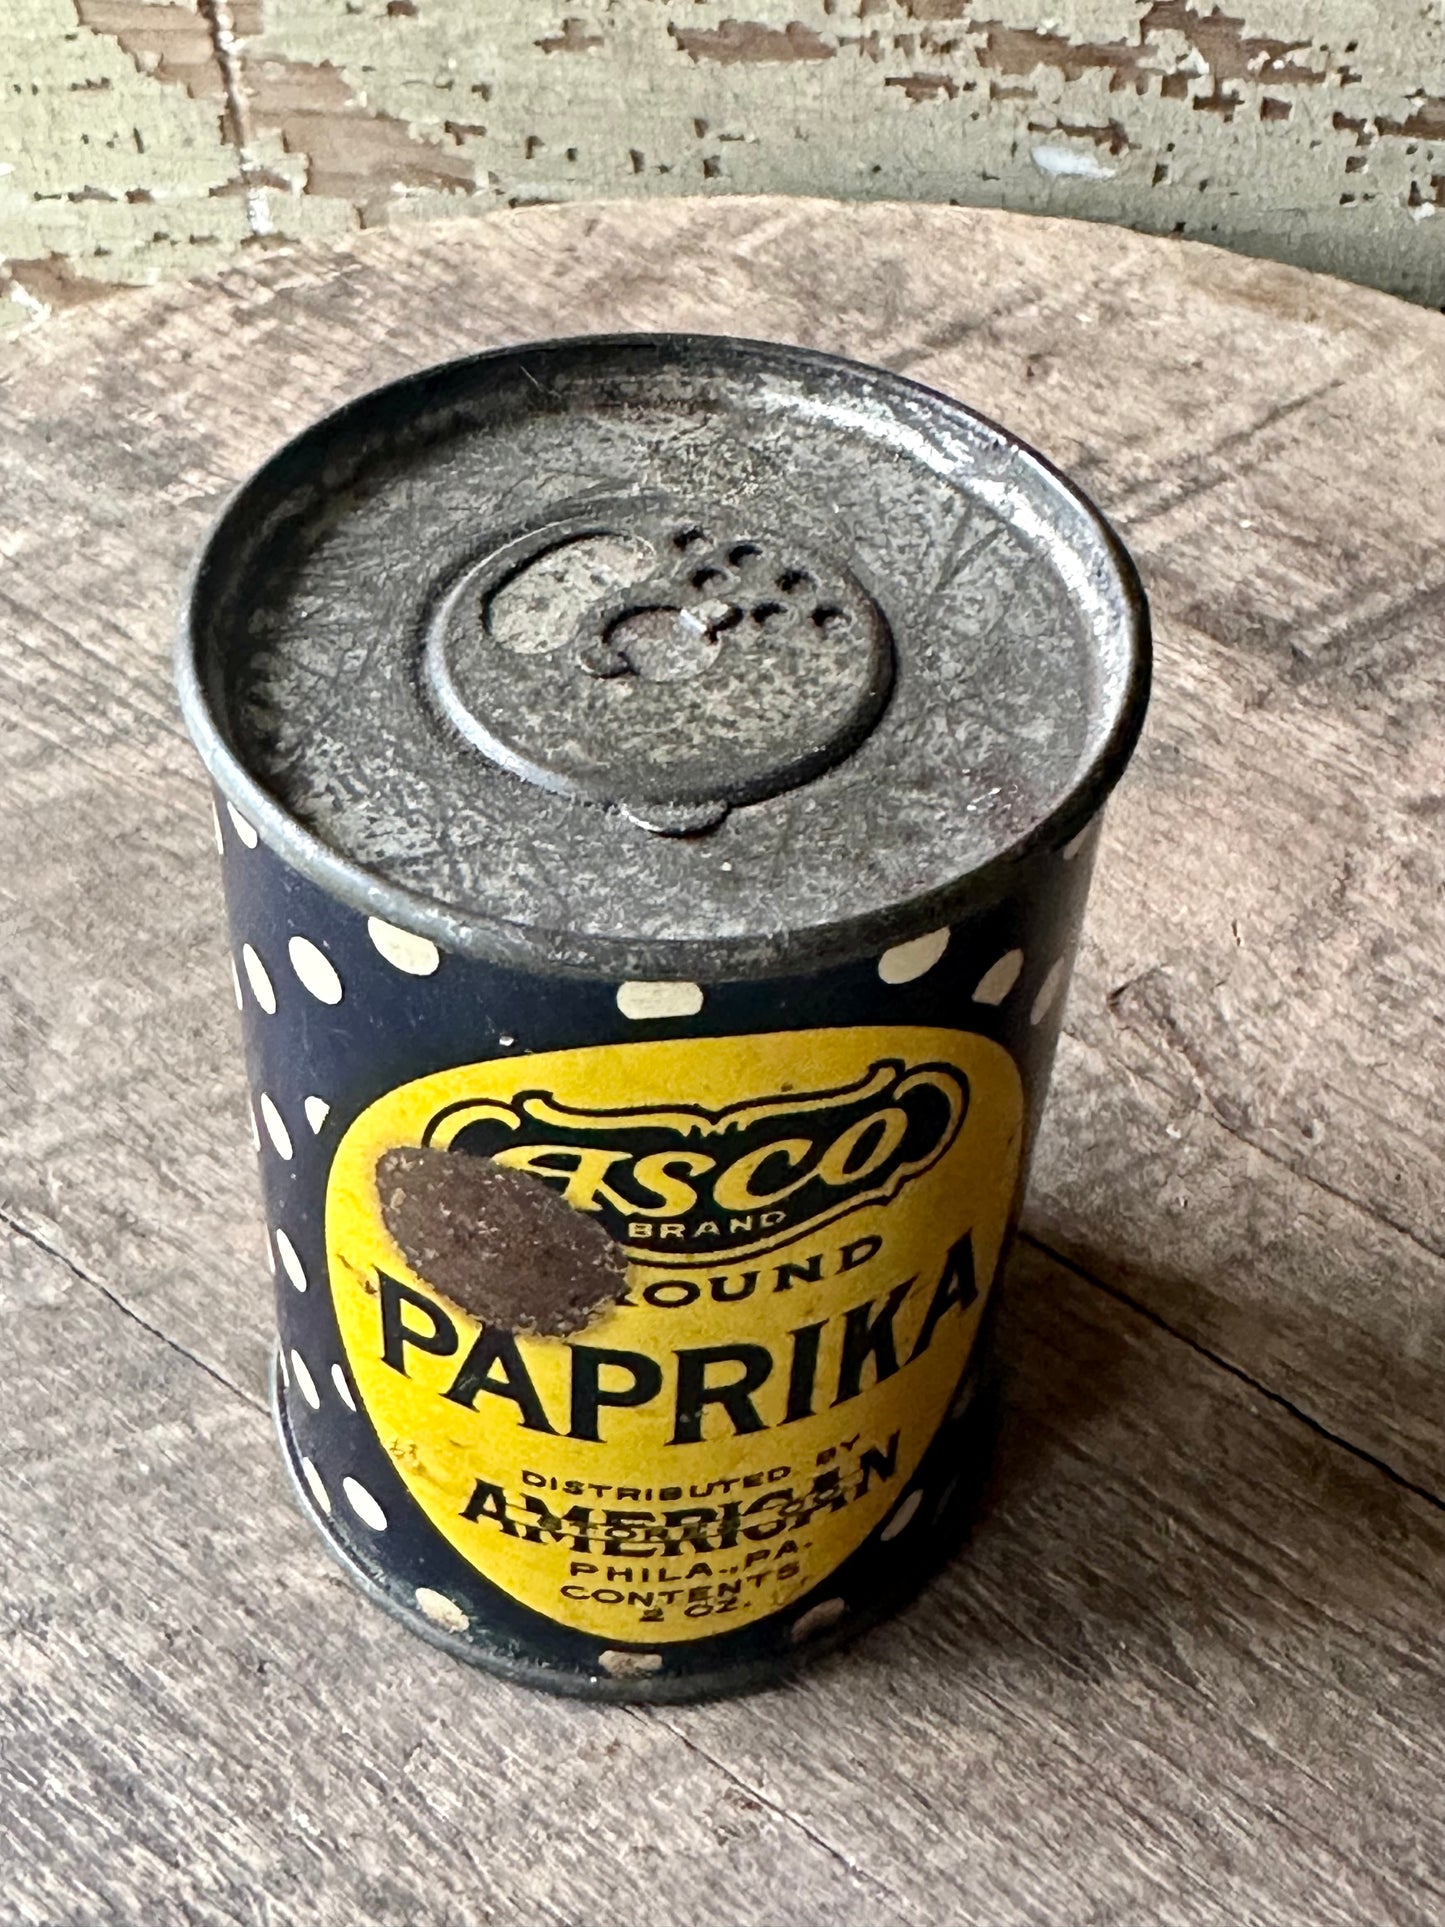 Asco Brand Ground Paprika Tin